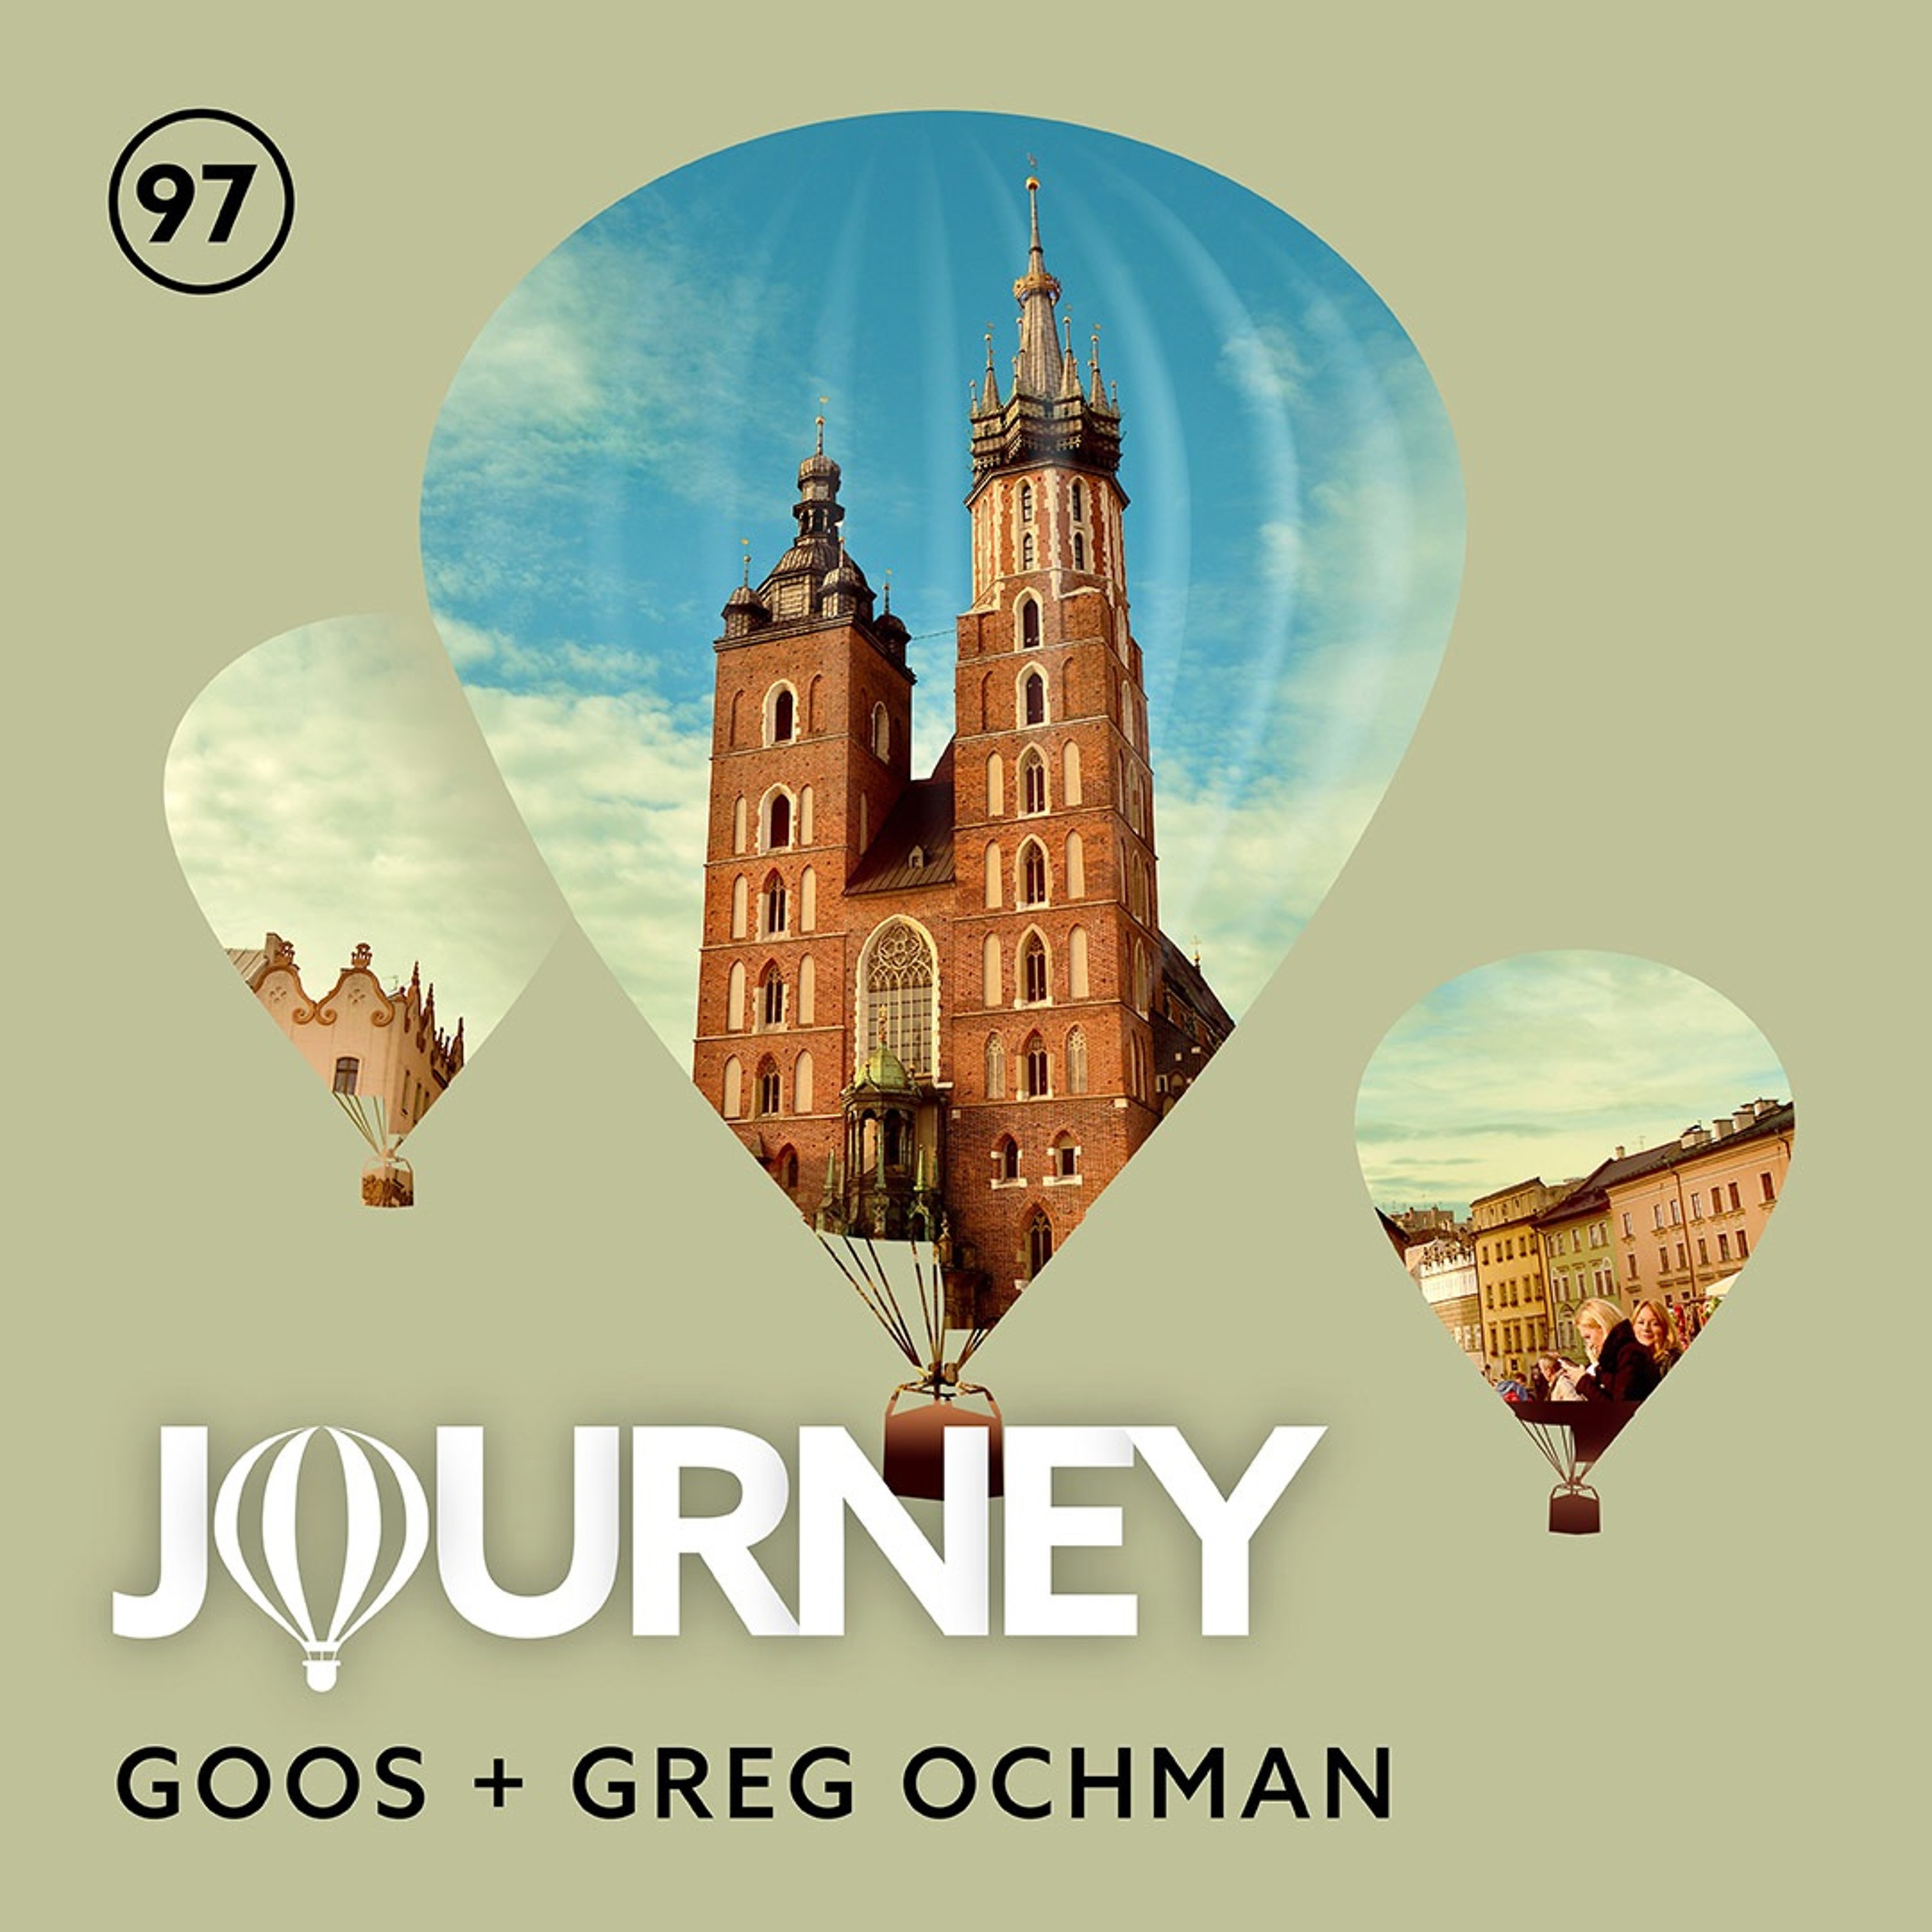 Mix journey. Greg Ochman. Greg Ochman - the other me.